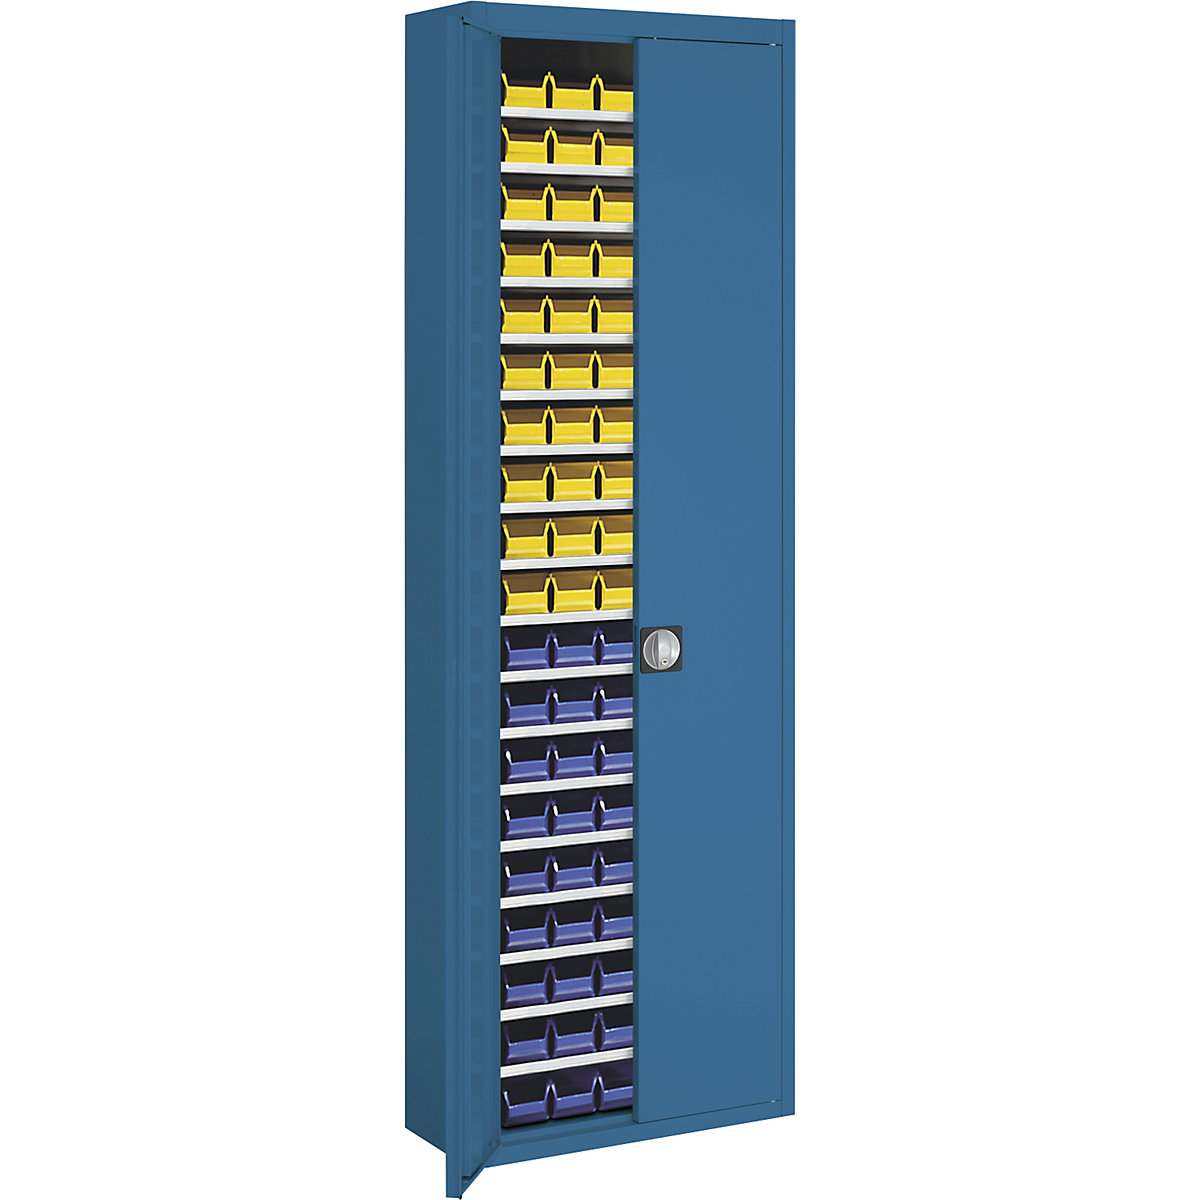 Magazijnkast met magazijnbakken – mauser, h x b x d = 2150 x 680 x 280 mm, eenkleurig, blauw, 114 bakken-3